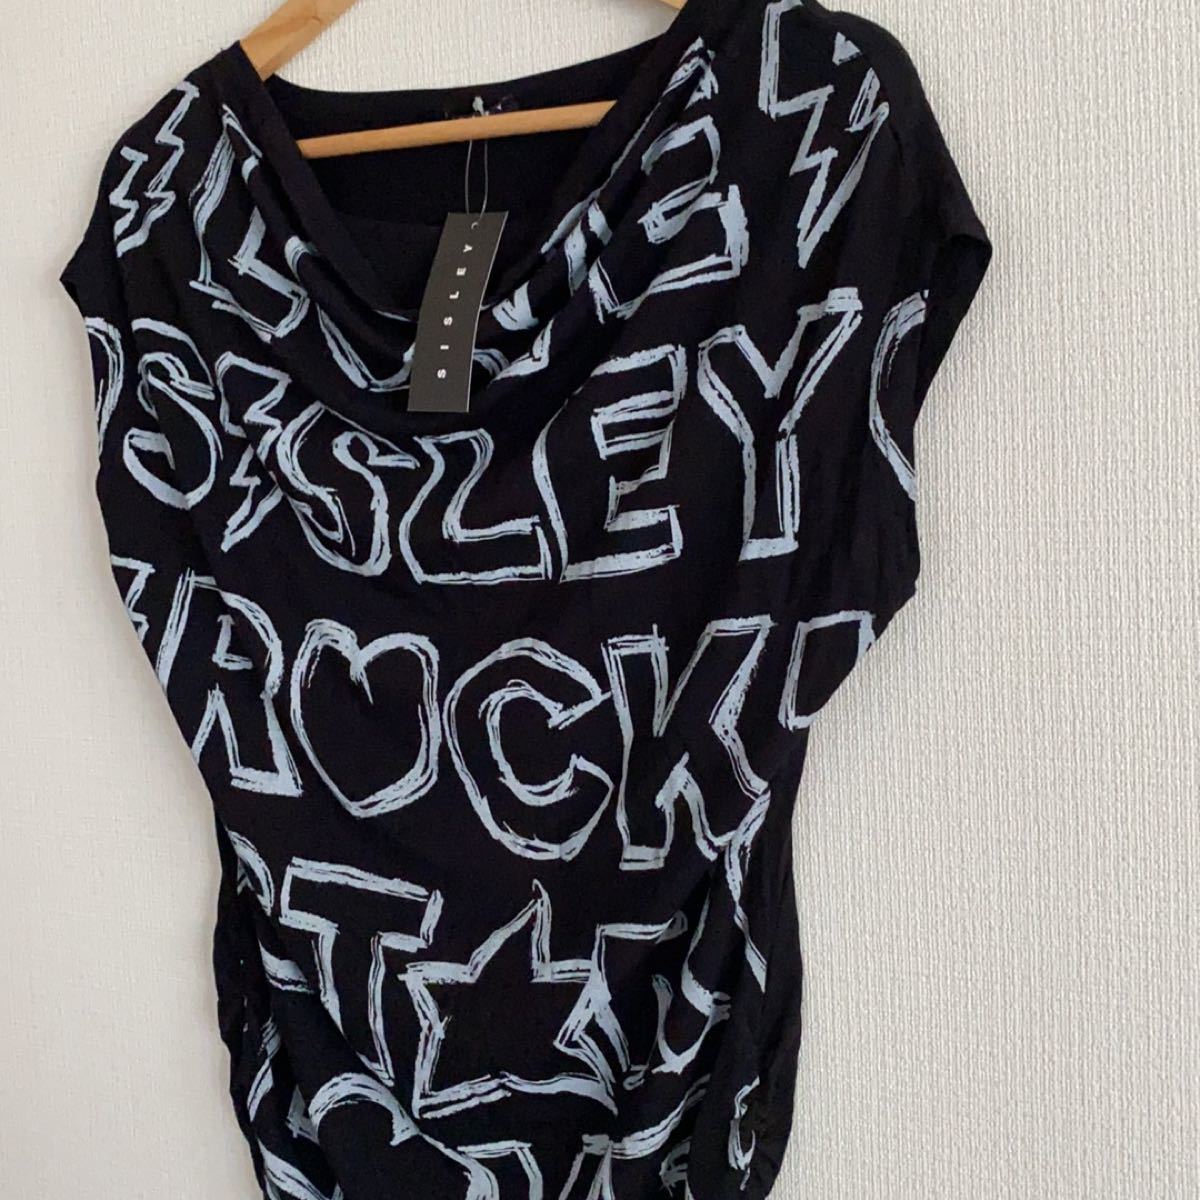 【新品タグ付き】SISLEY  ROCKプリント Tシャツ、カットソー